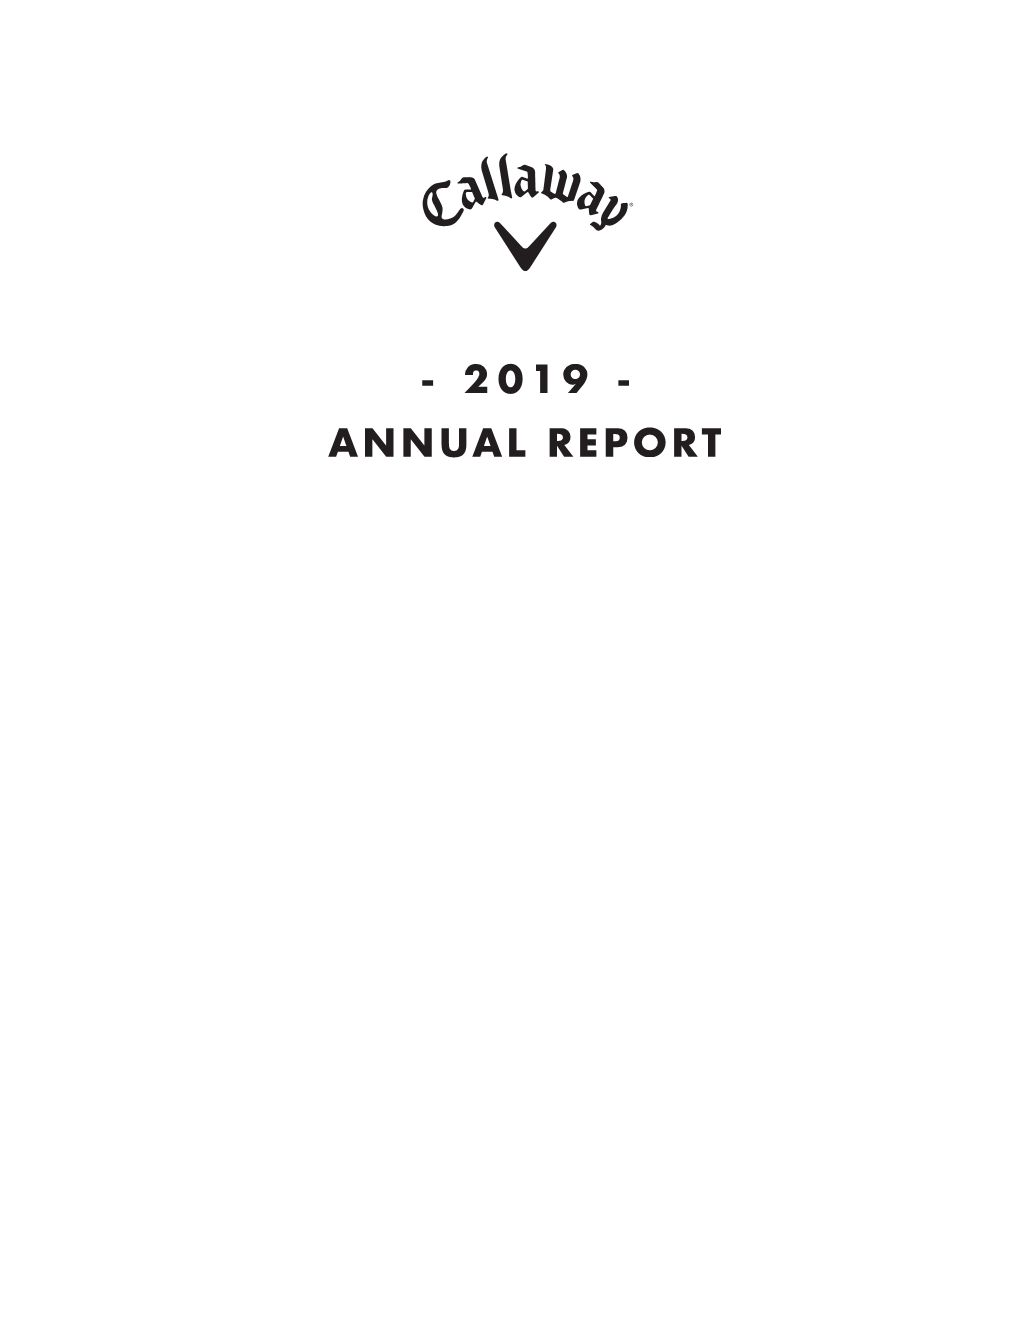 Annual Report 7R2Xu6Kduhkroghuv